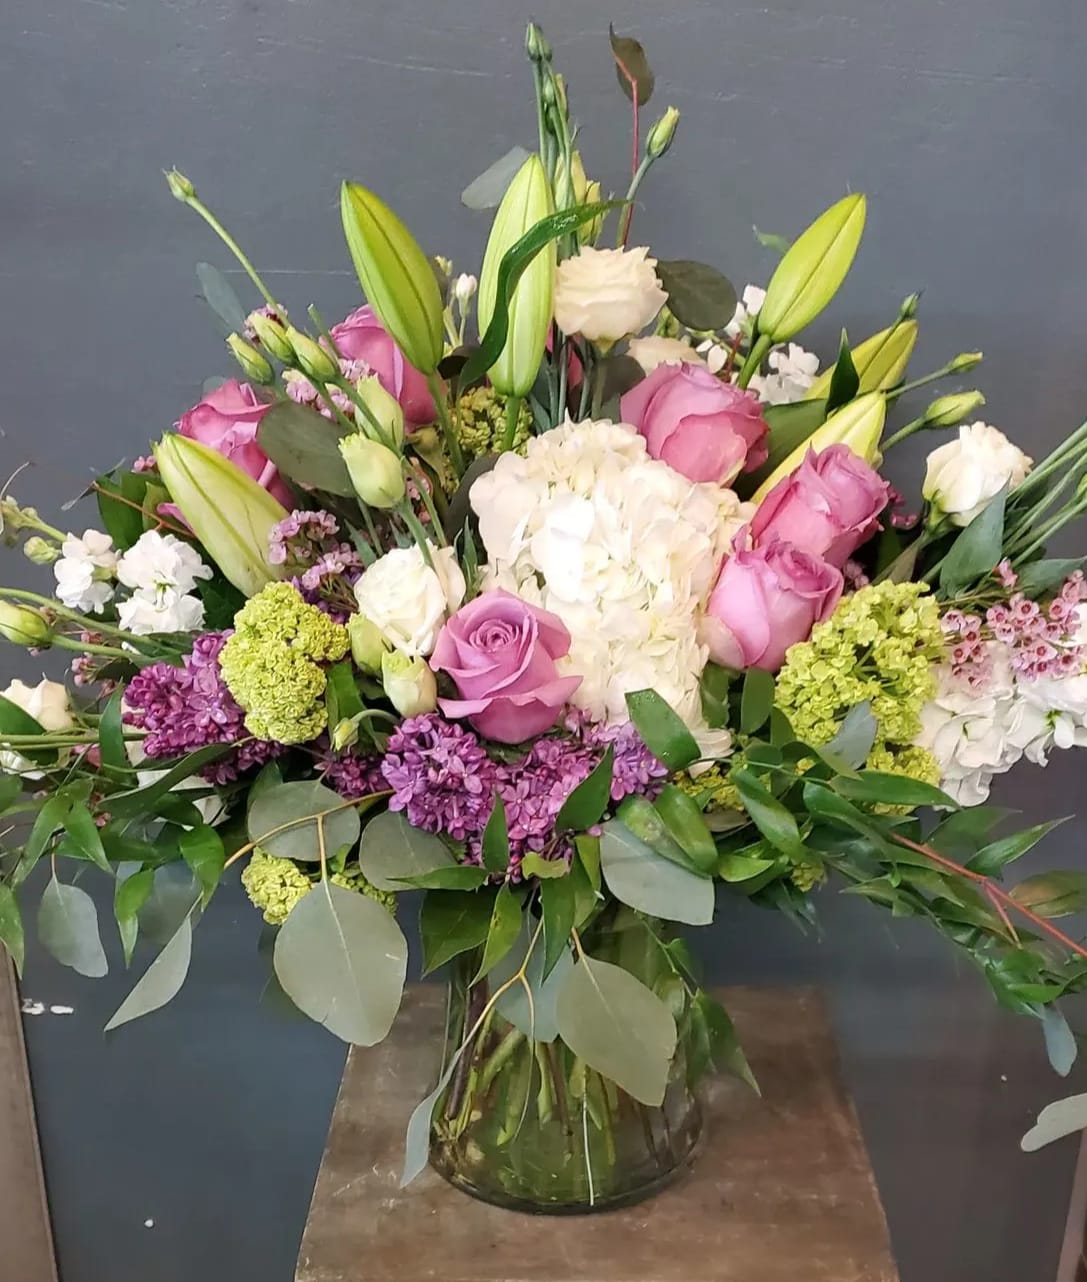 Carnation Lei - Sparks Florist®  Reno & Sparks Flower Delivery